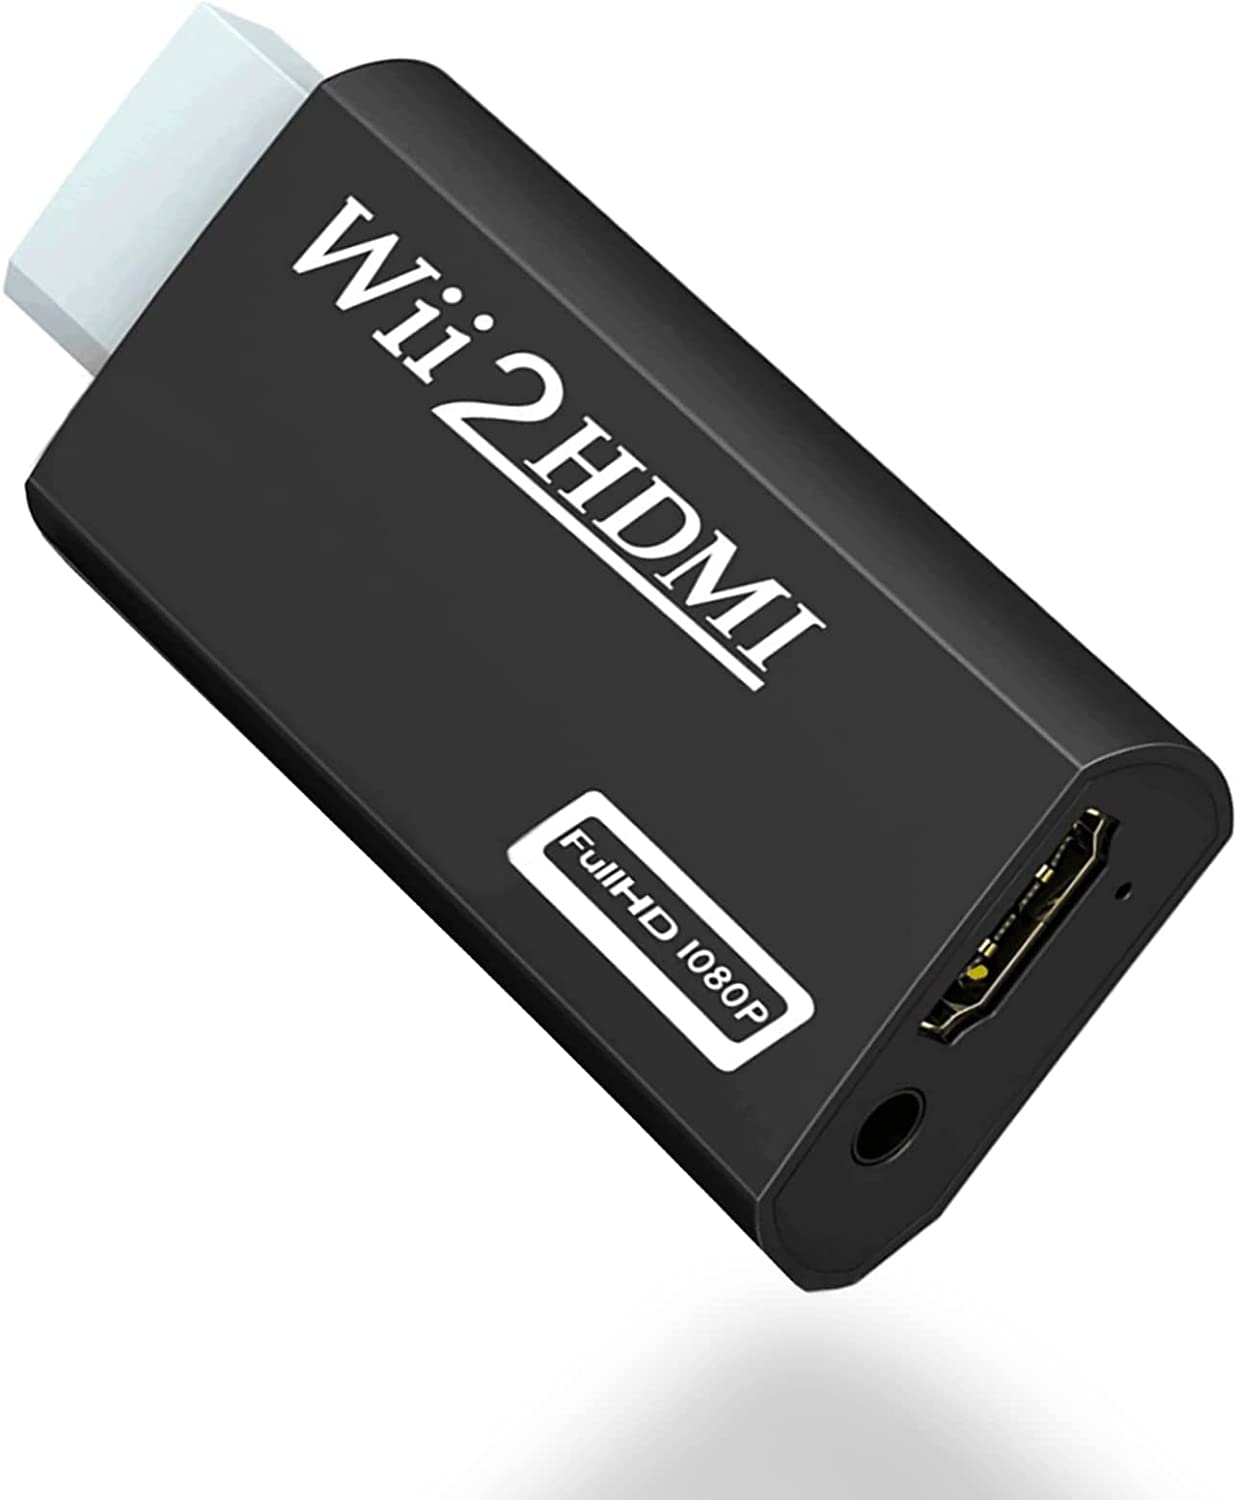 Convertidor HDMI para Nintendo Wii Adaptador HDMI